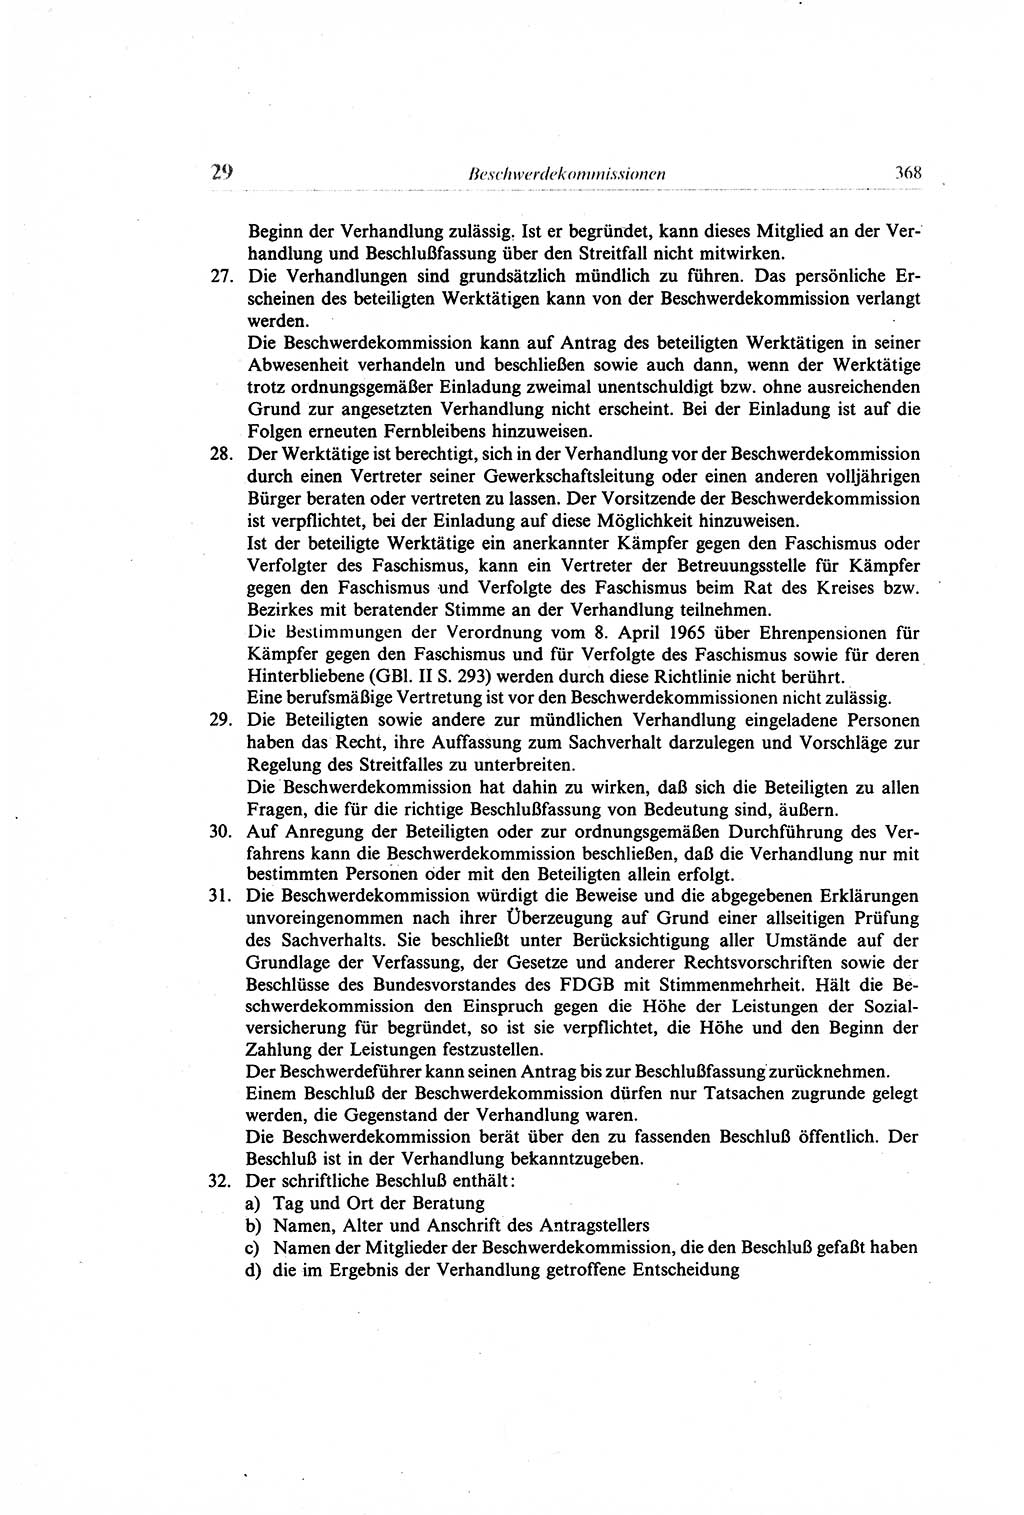 Gesetzbuch der Arbeit (GBA) und andere ausgewählte rechtliche Bestimmungen [Deutsche Demokratische Republik (DDR)] 1968, Seite 368 (GBA DDR 1968, S. 368)